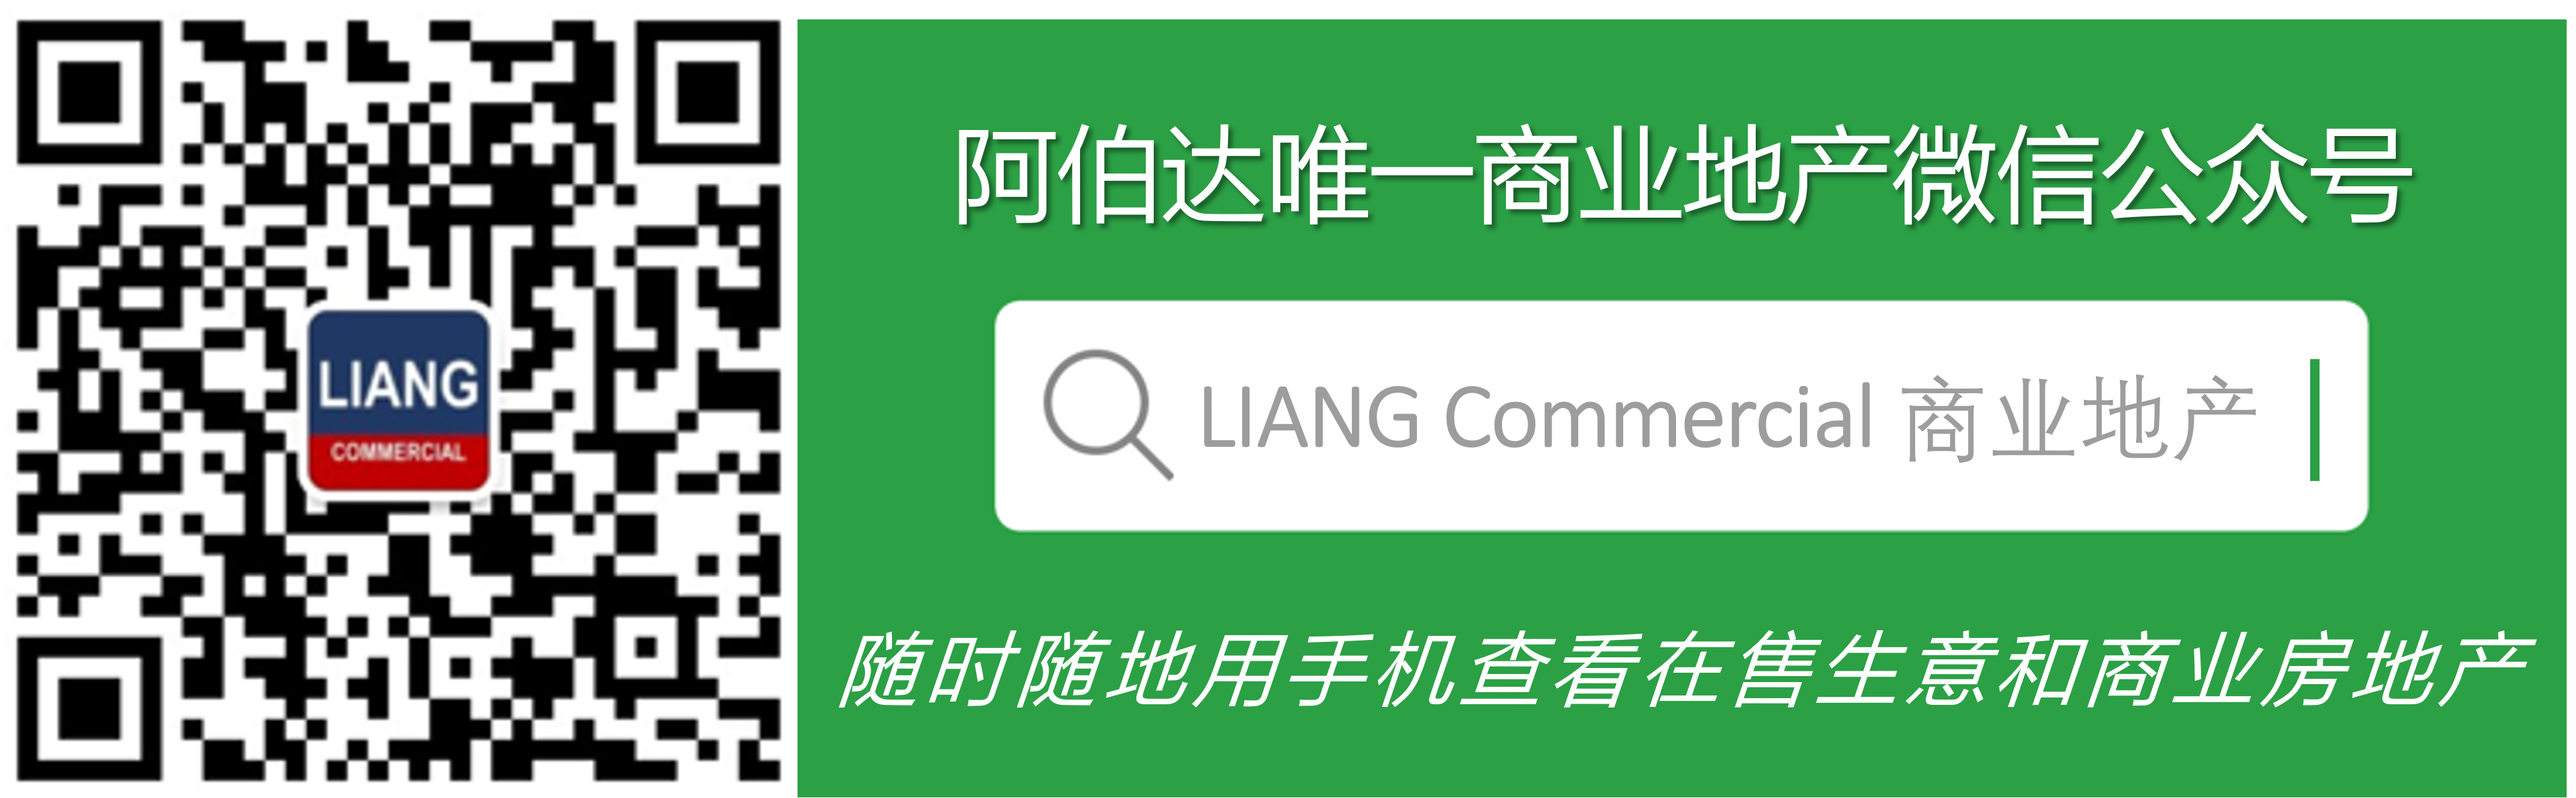 Updated Green WeChat